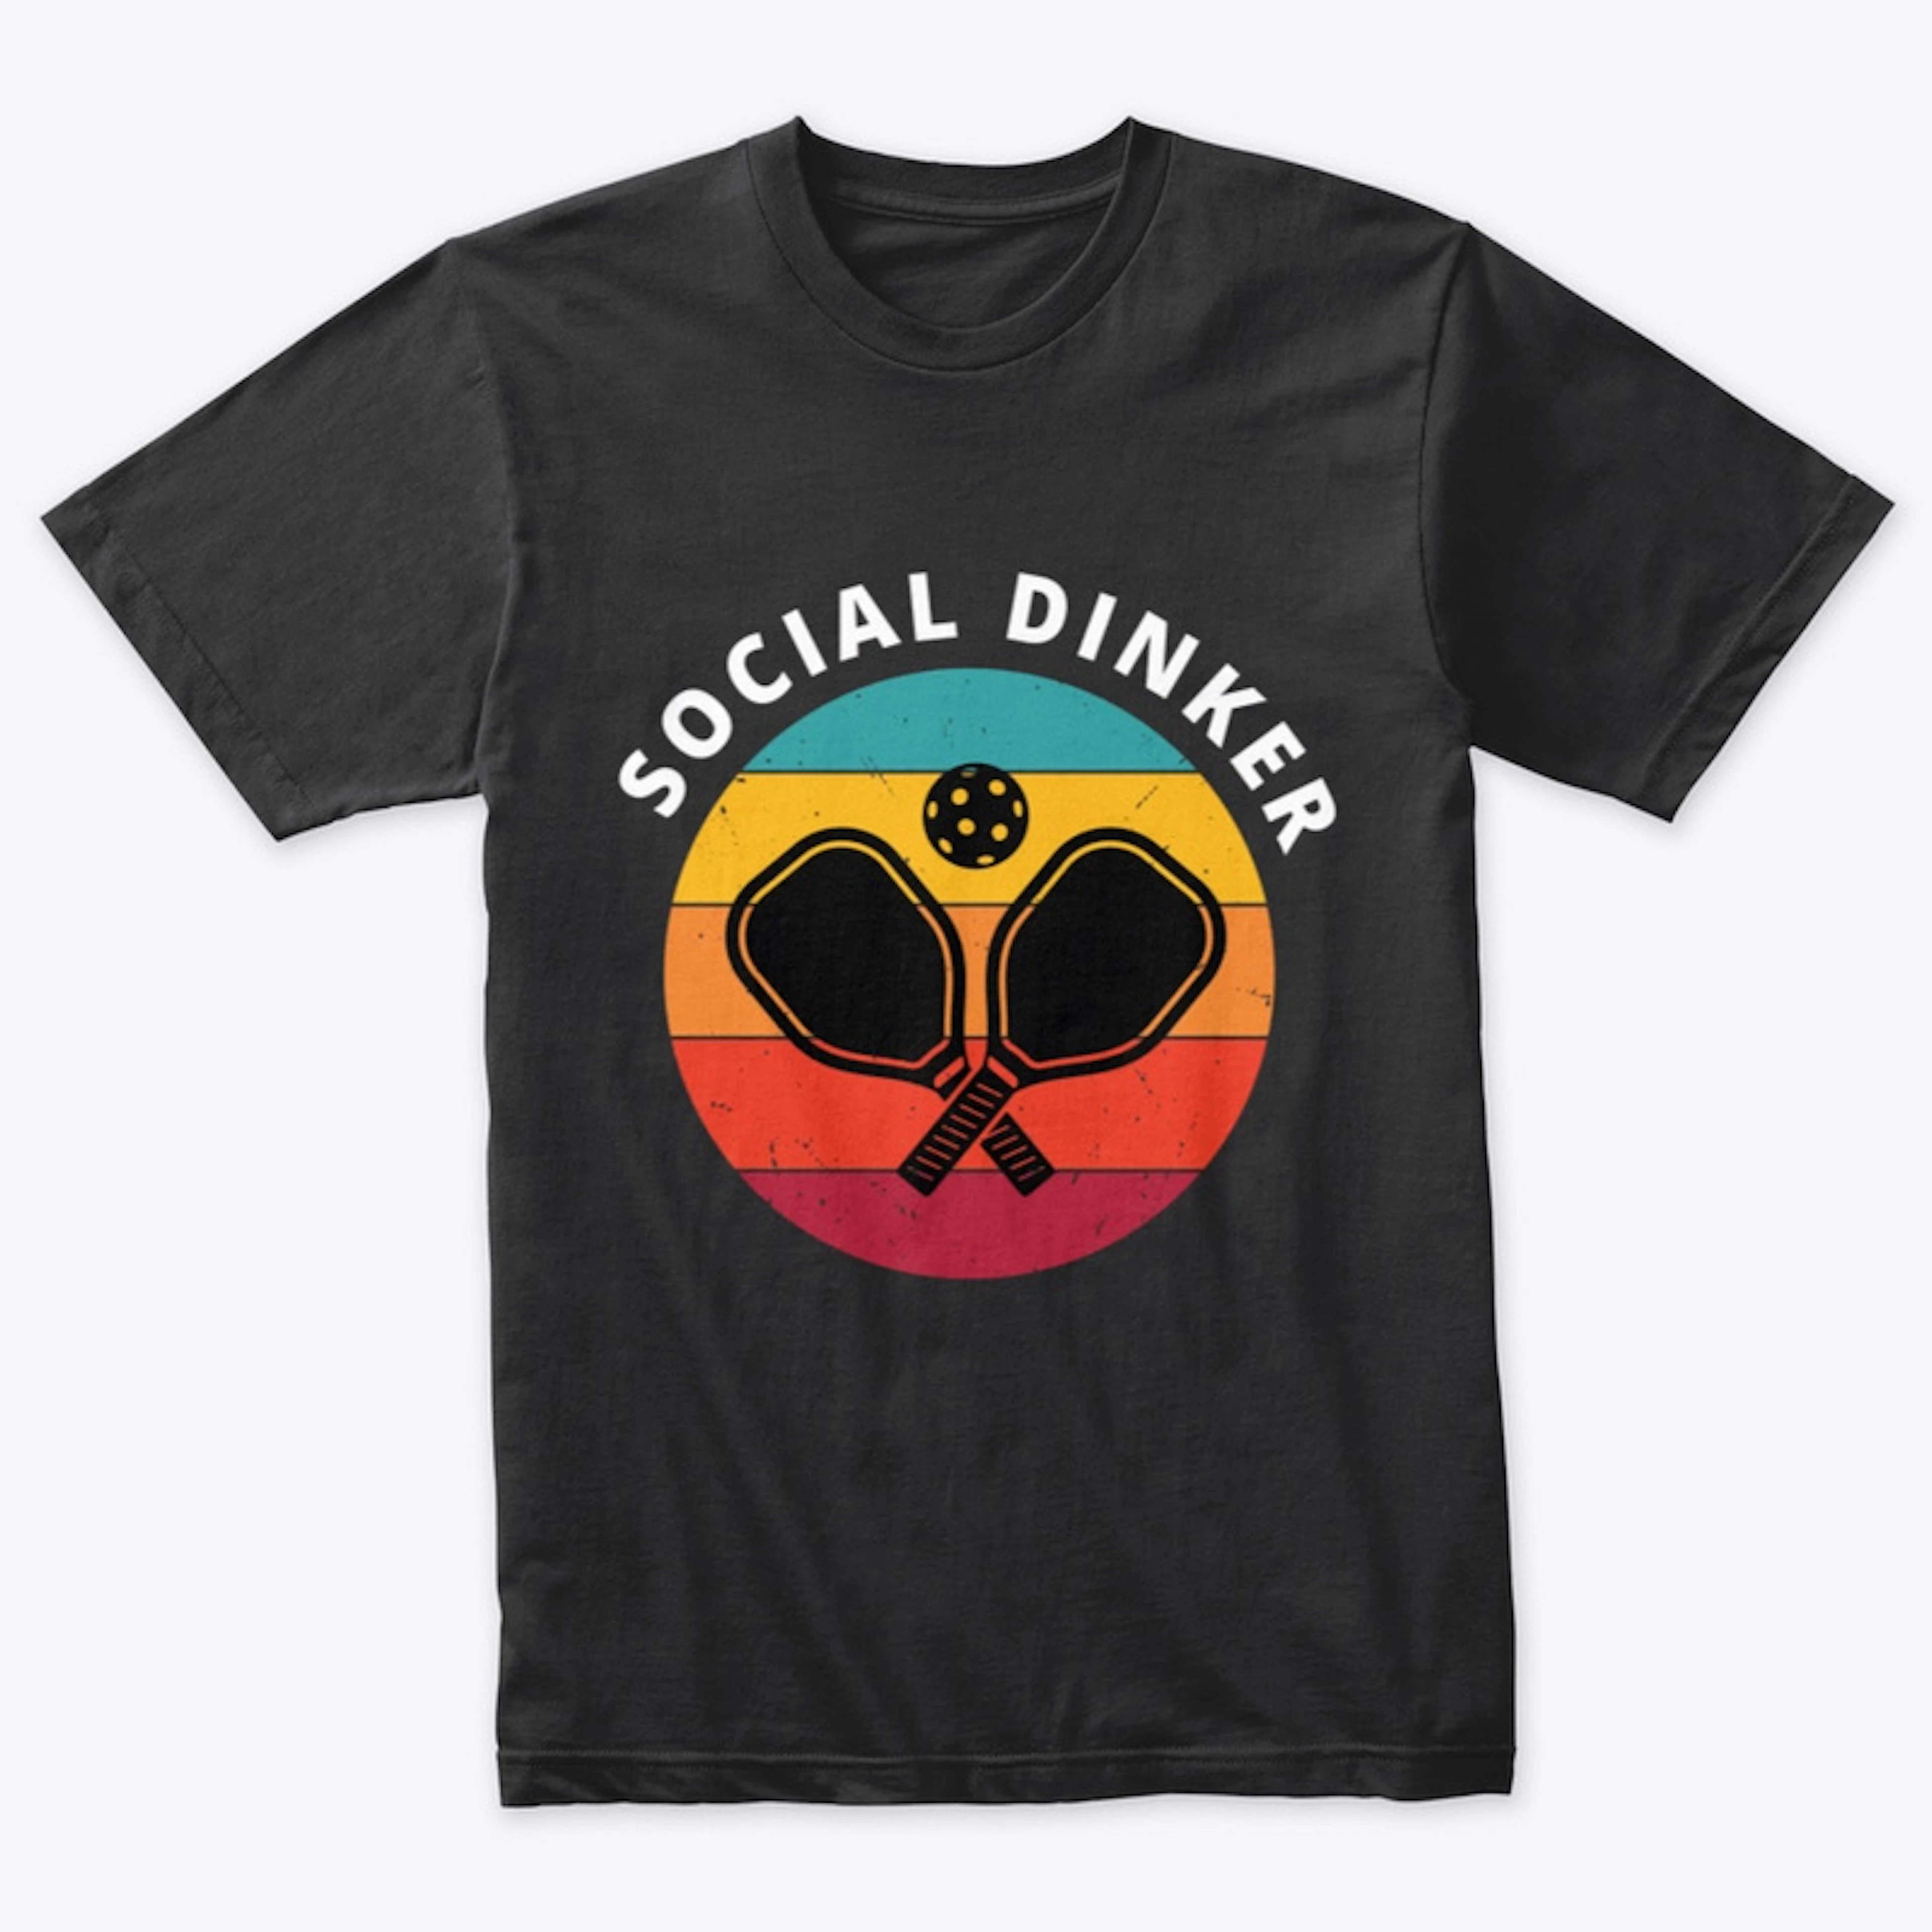 Social Dinker